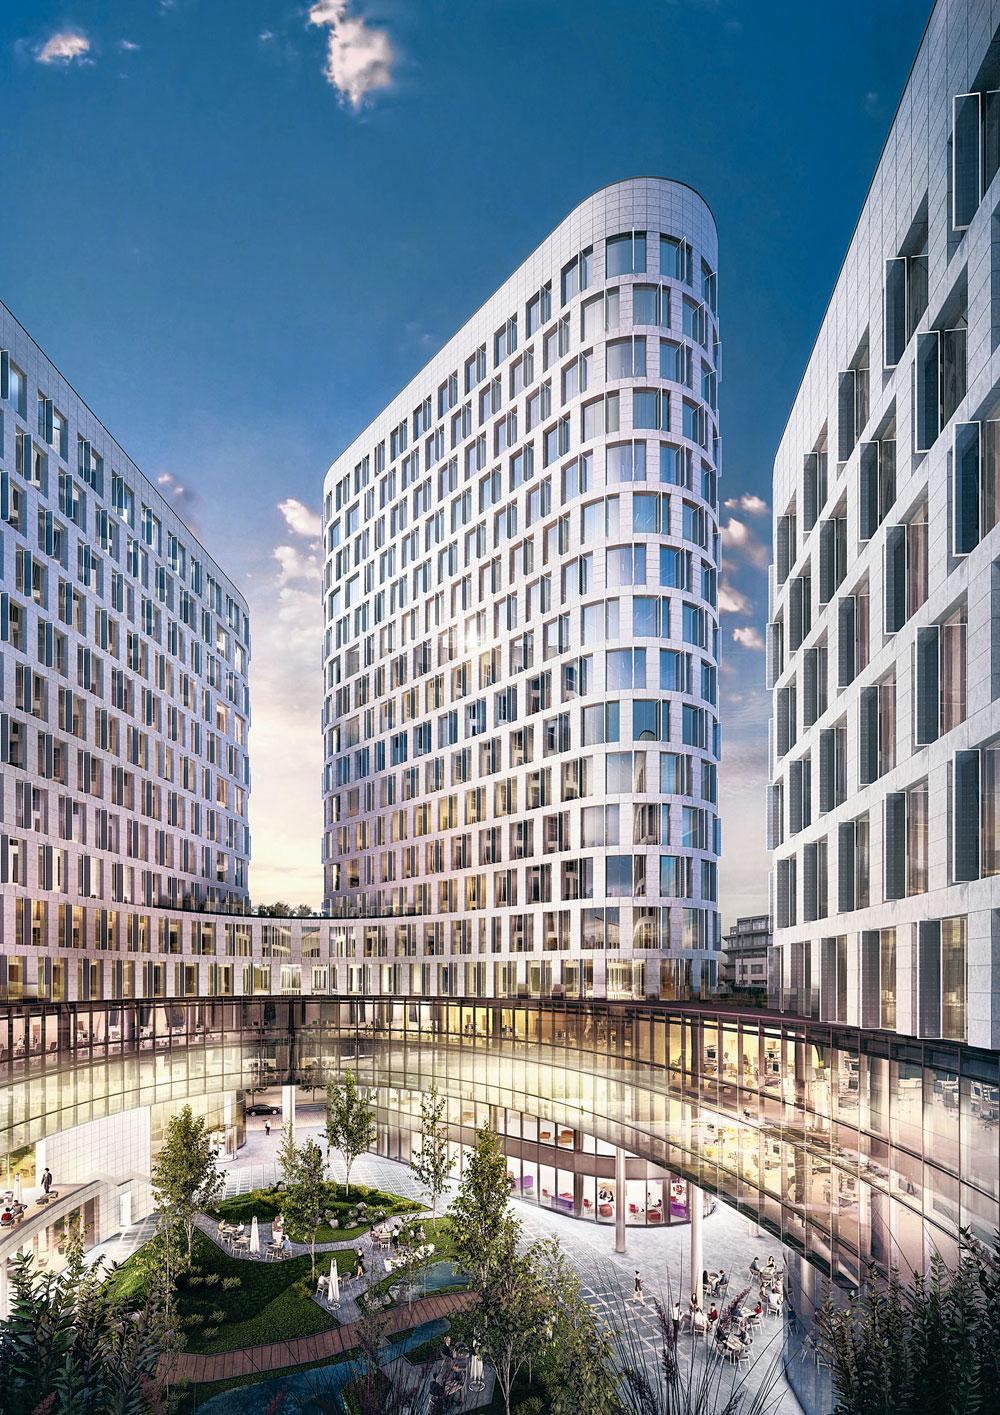 BRUSSEL De bouwmeester wil meer creativiteit en innovatie in de Brusselse vastgoed- sector brengen.